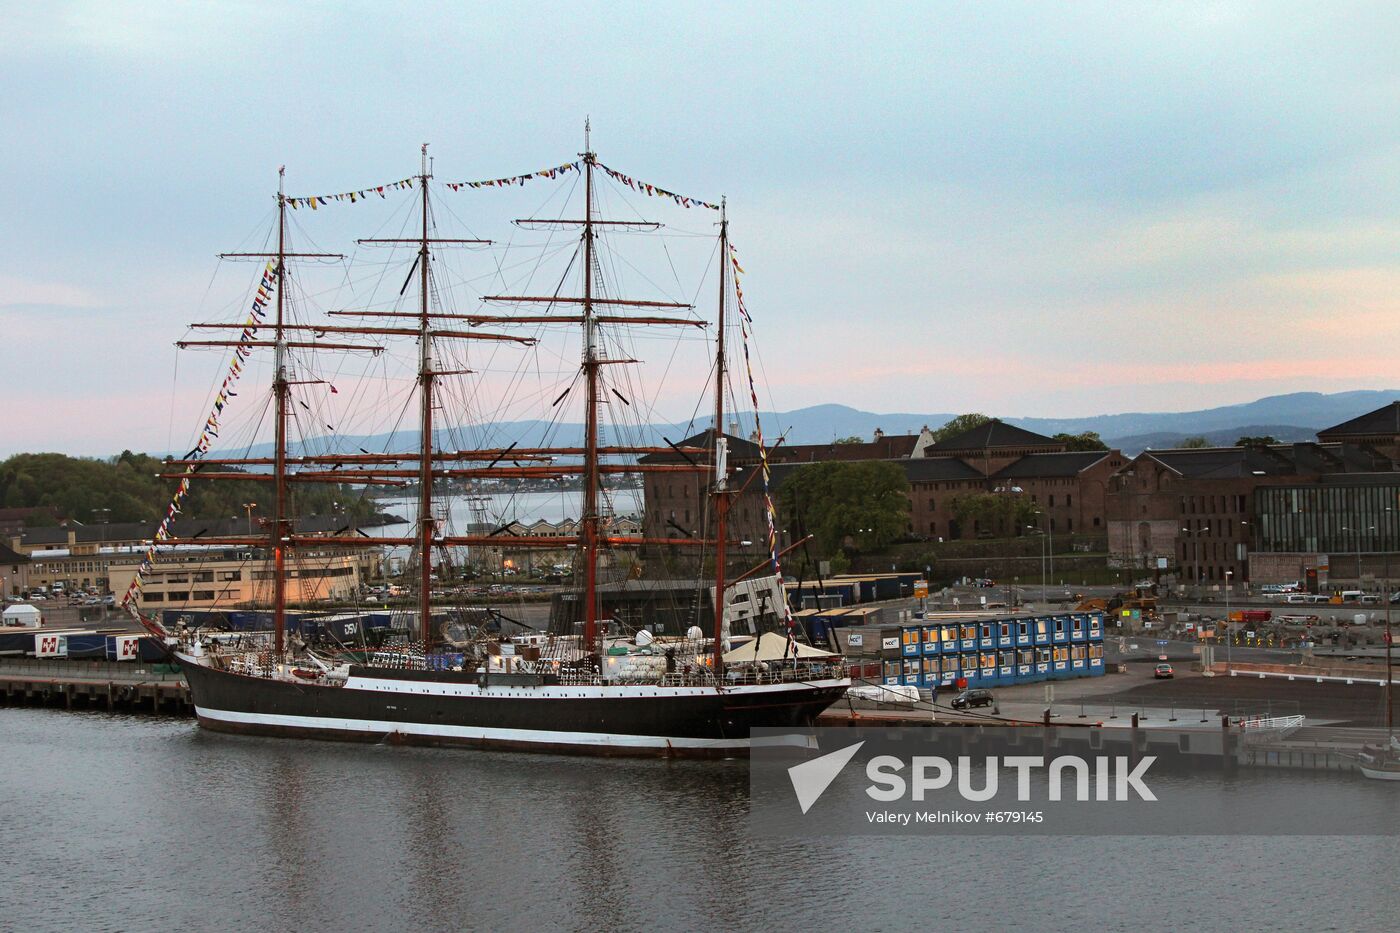 Russian tall ship "Sedov" in Oslo port